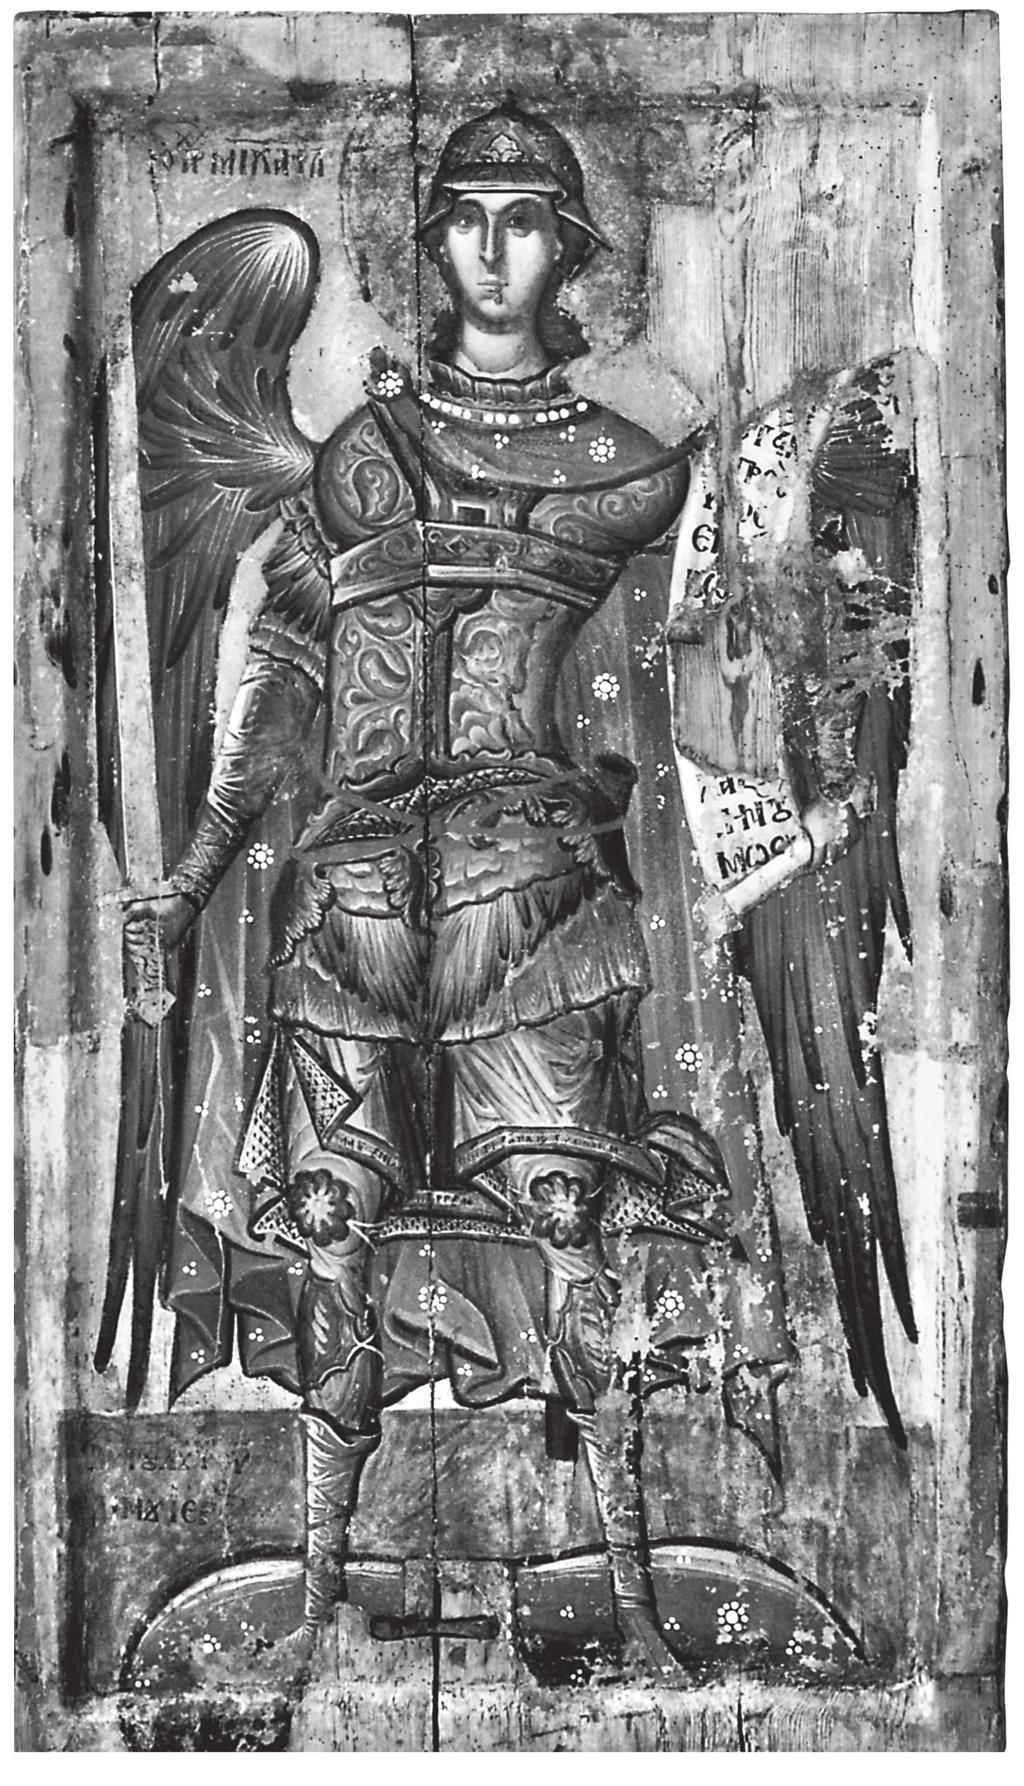 του αγίου Νικολάου στον Άγιο Νικόλαο της μοναχής Ευ πραξίας στην Καστοριά (1485/6)17. Η επόμενη εικόνα προέρχεται από το χωριό Νεστόριο, που βρίσκεται σε απόσταση 20 χιλ.